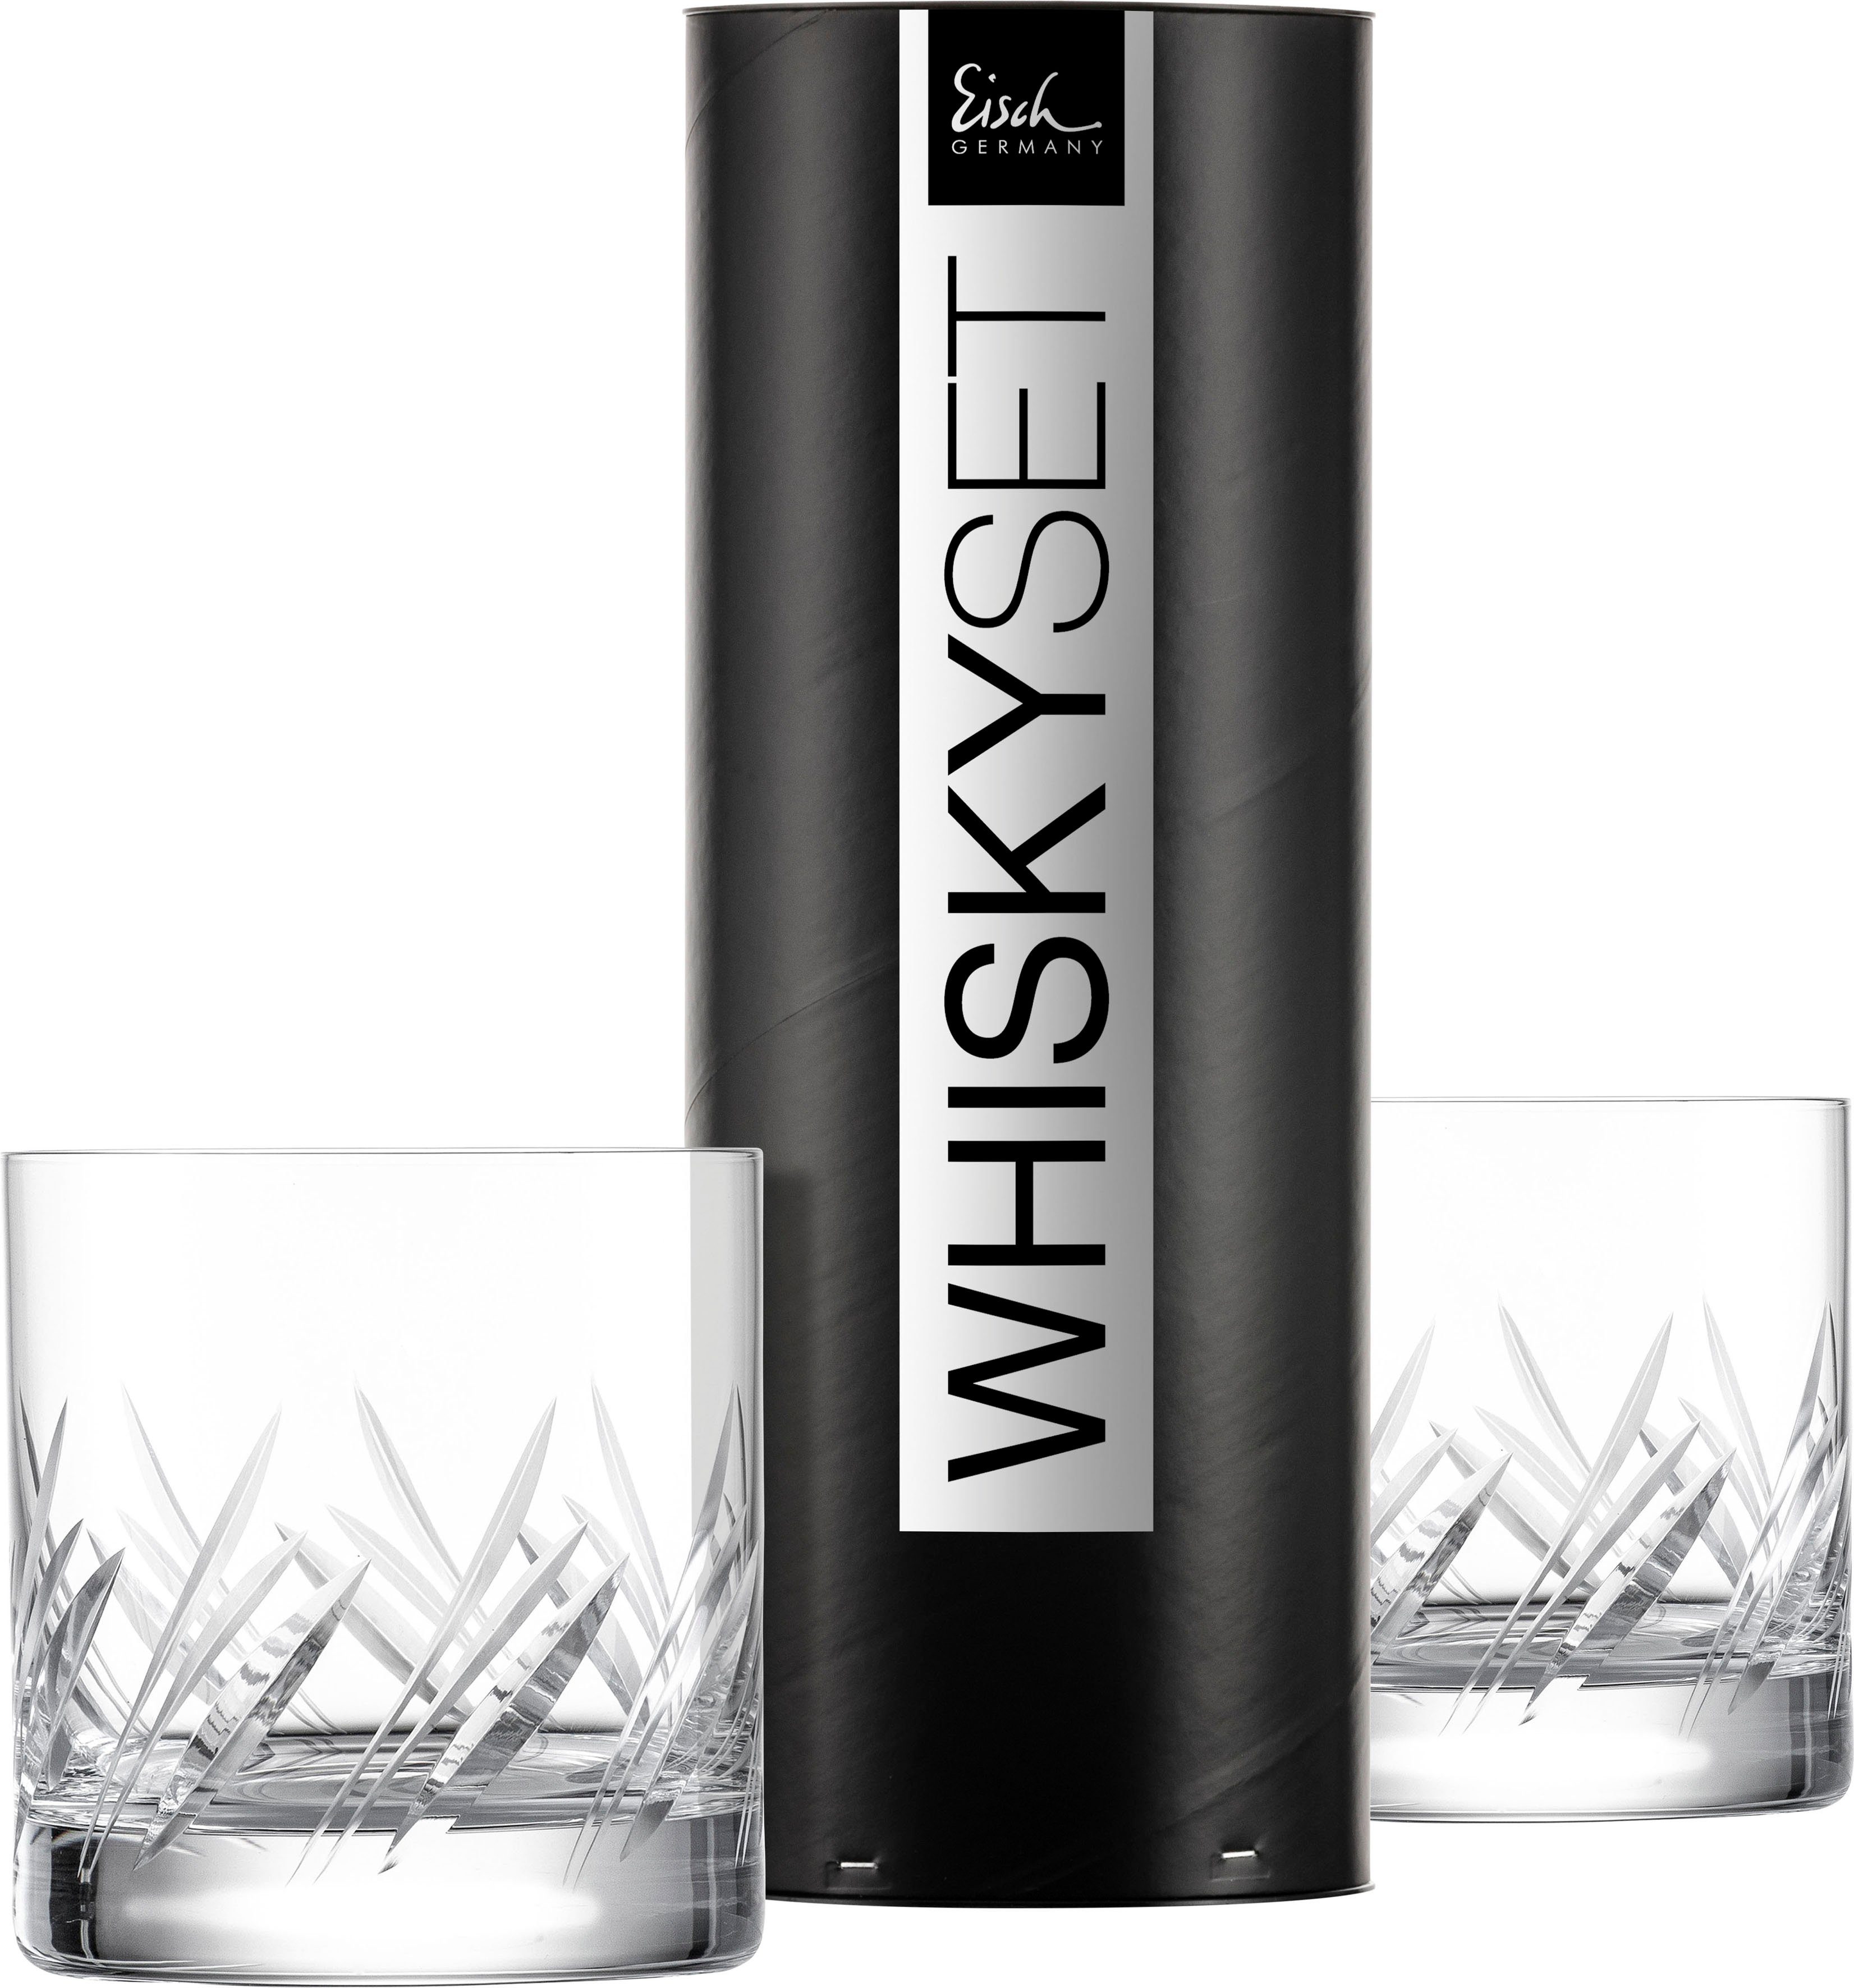 Kristallglas, Germany Handarbeit, Whiskyglas geschliffen, GENTLEMAN, -teilig, Made 400 ml, Eisch in 2